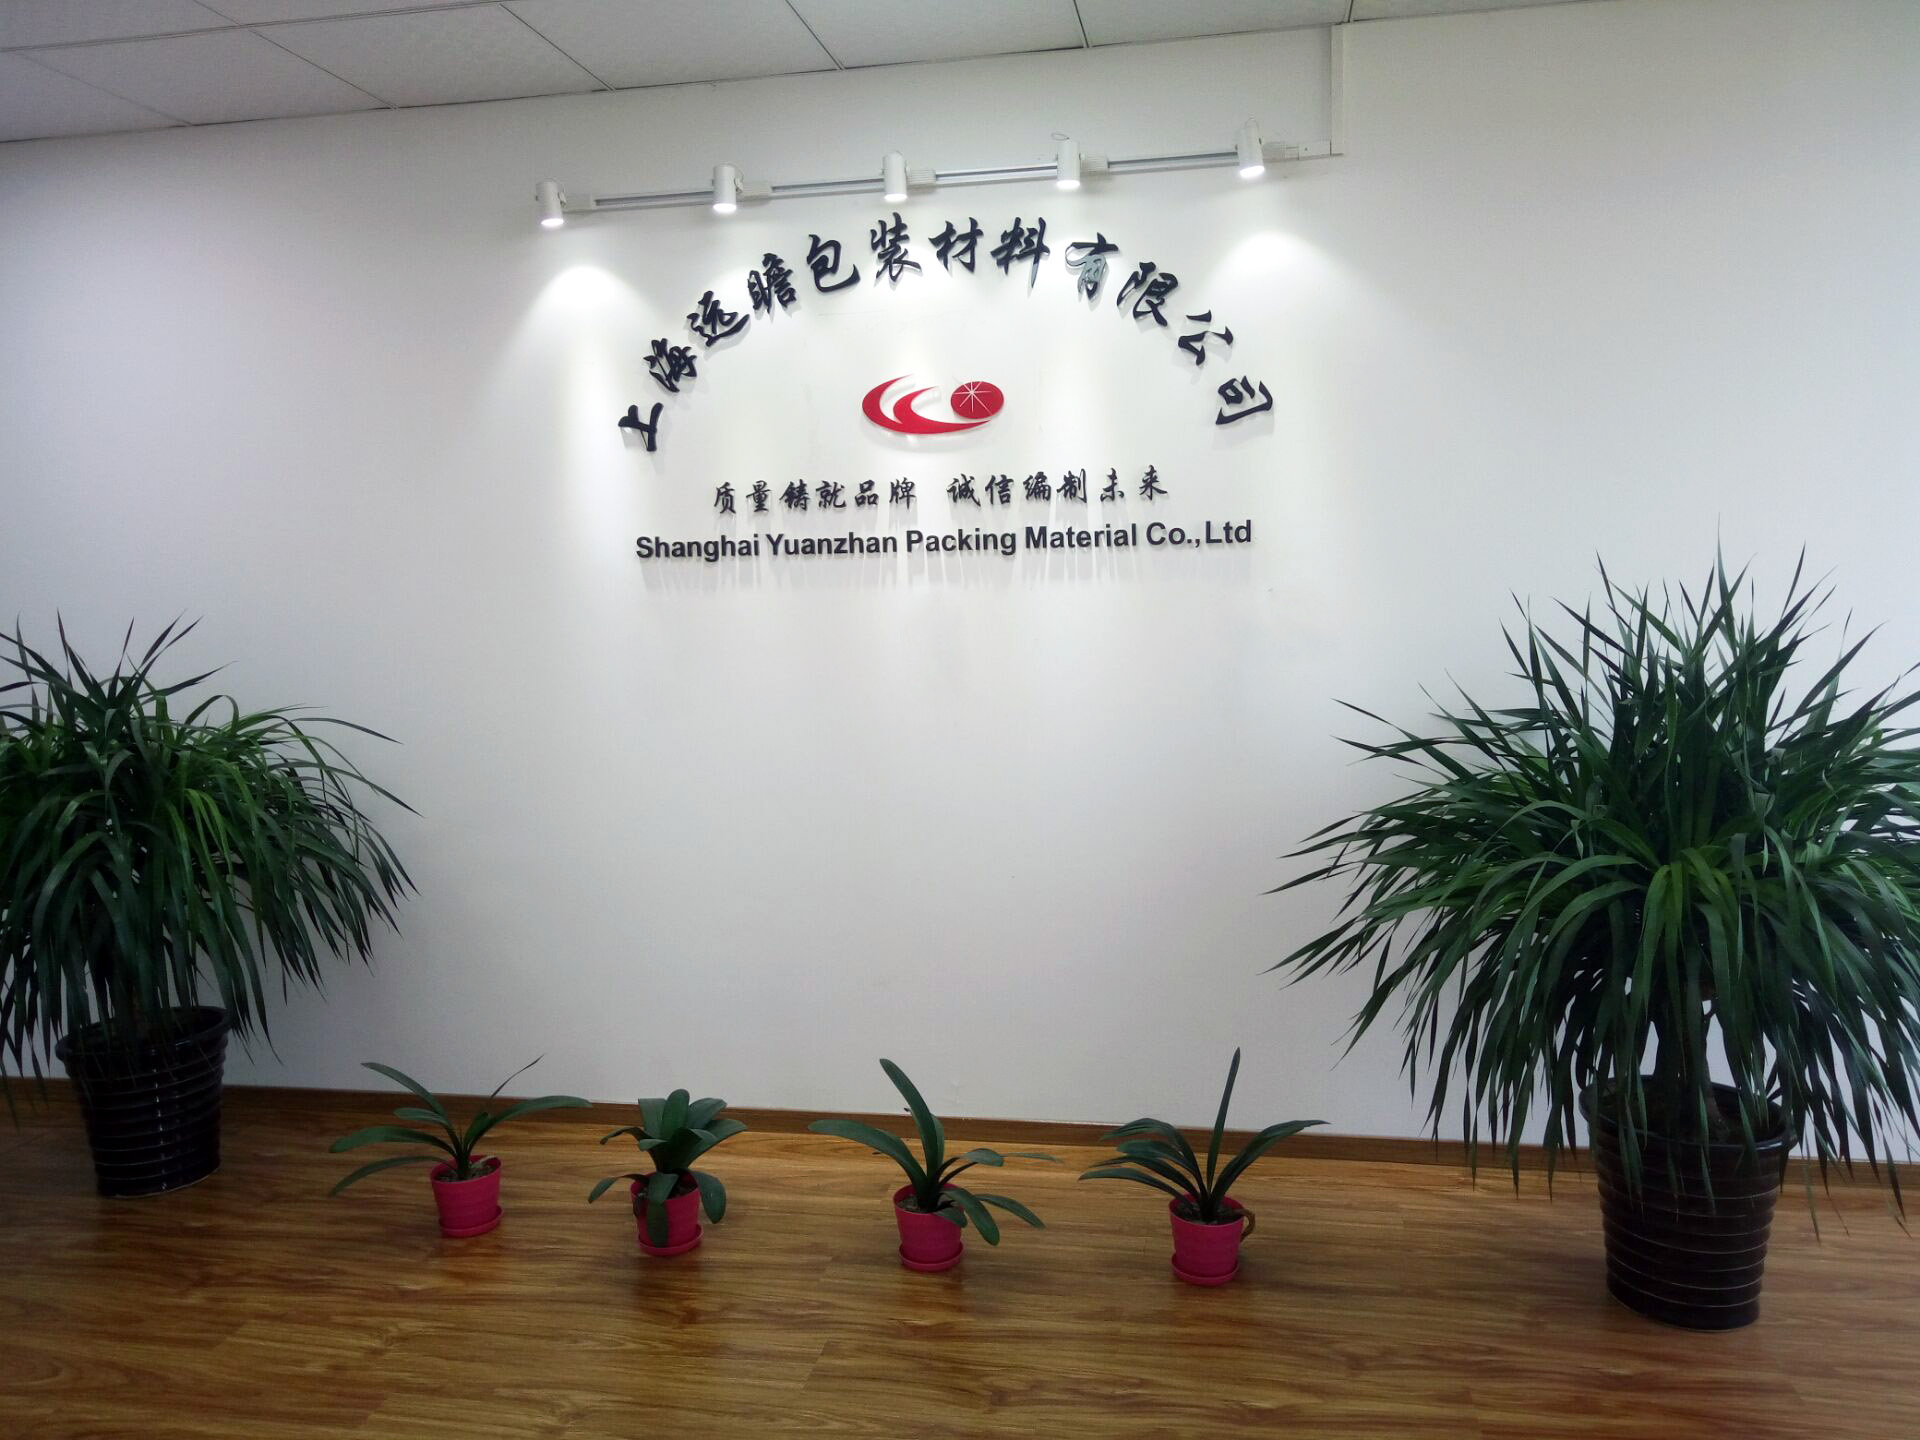 上海远瞻包装材料有限公司的企业标志